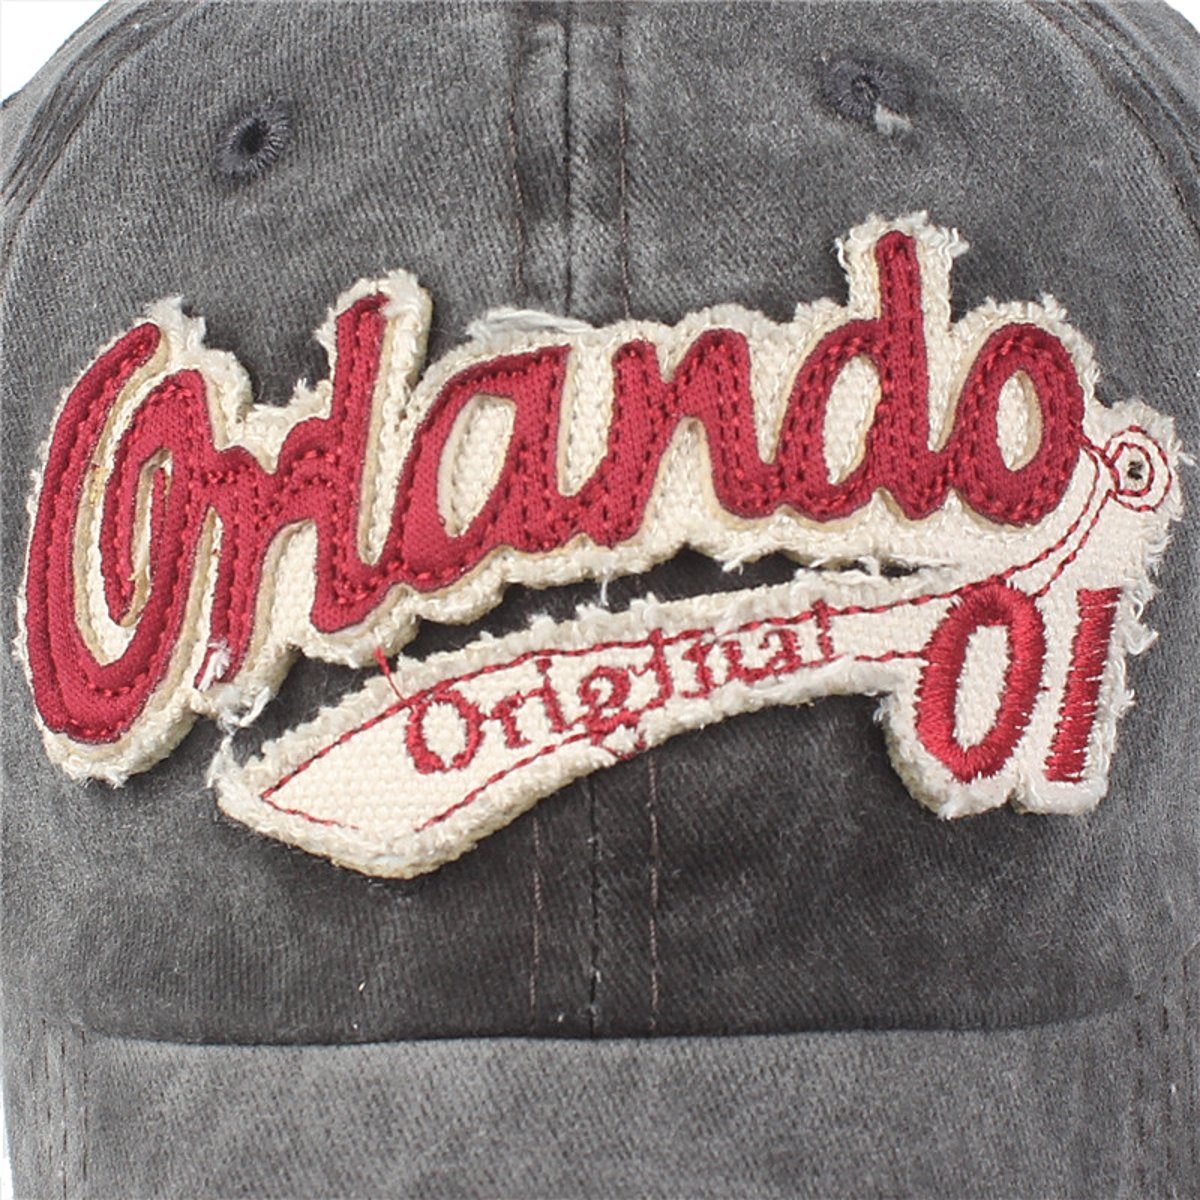 Washed Orlando Baseballcap Used Look schwarz Vintage Original Style Baseball Cap Sporty Retro